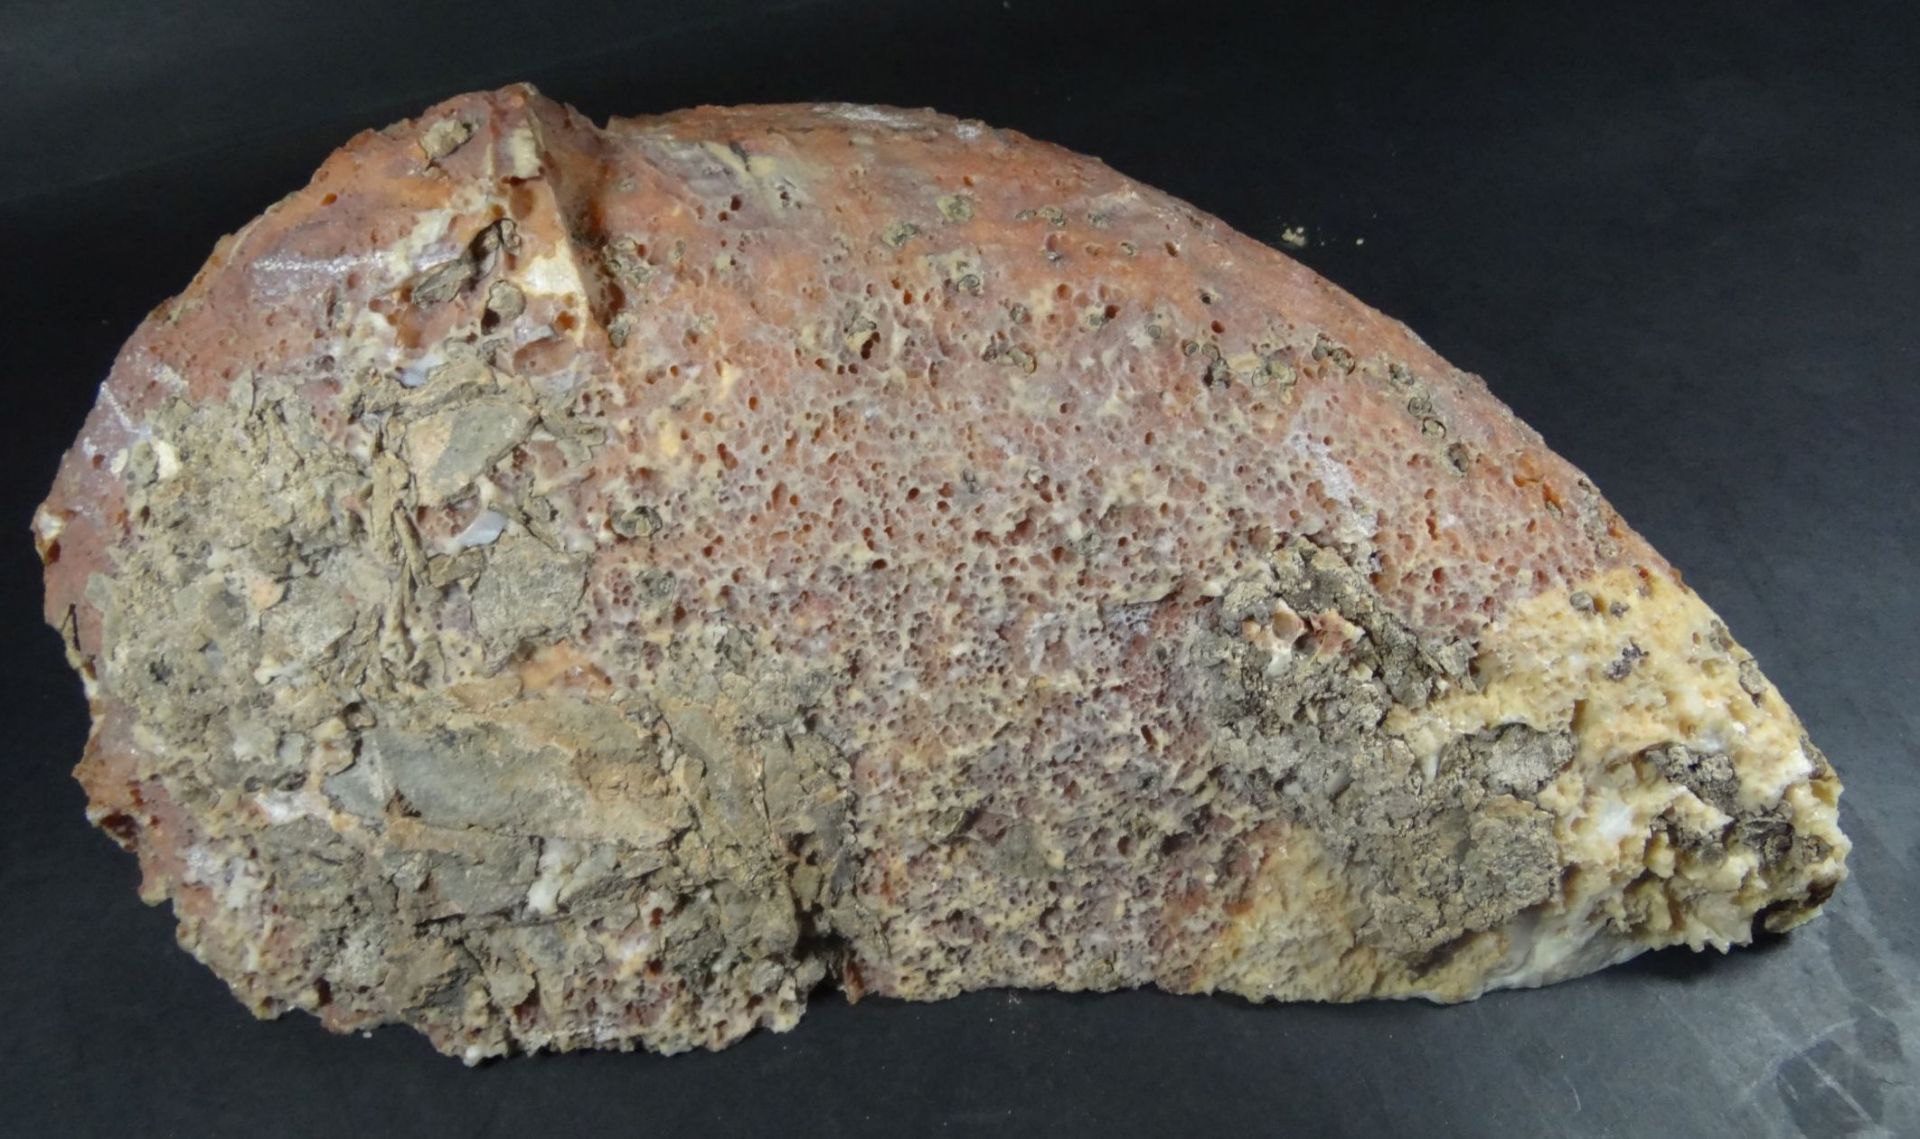 grosse Mineralien-Druse?, 7,4 kg, 14x32 cm- - -22.61 % buyer's premium on the hammer priceVAT margin - Bild 5 aus 5